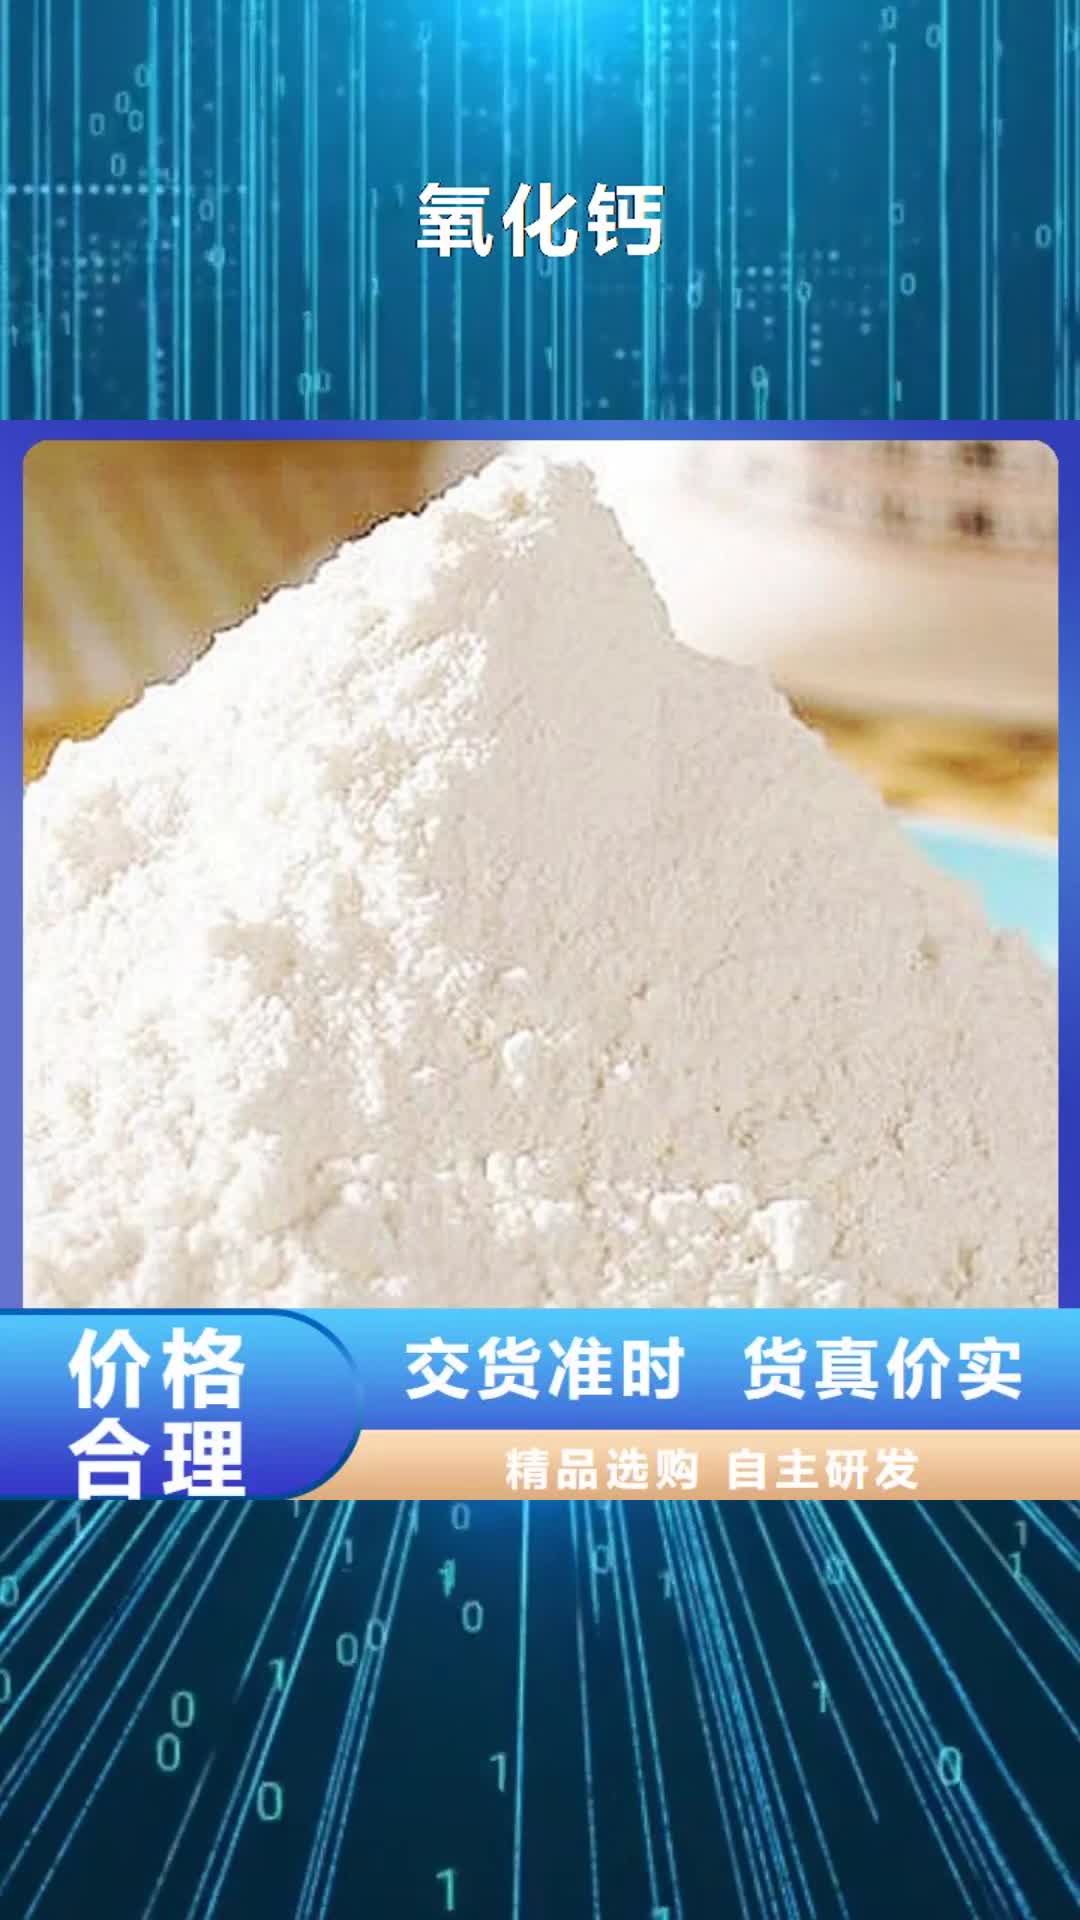 榆林【氧化钙】白灰粉
一站式采购商